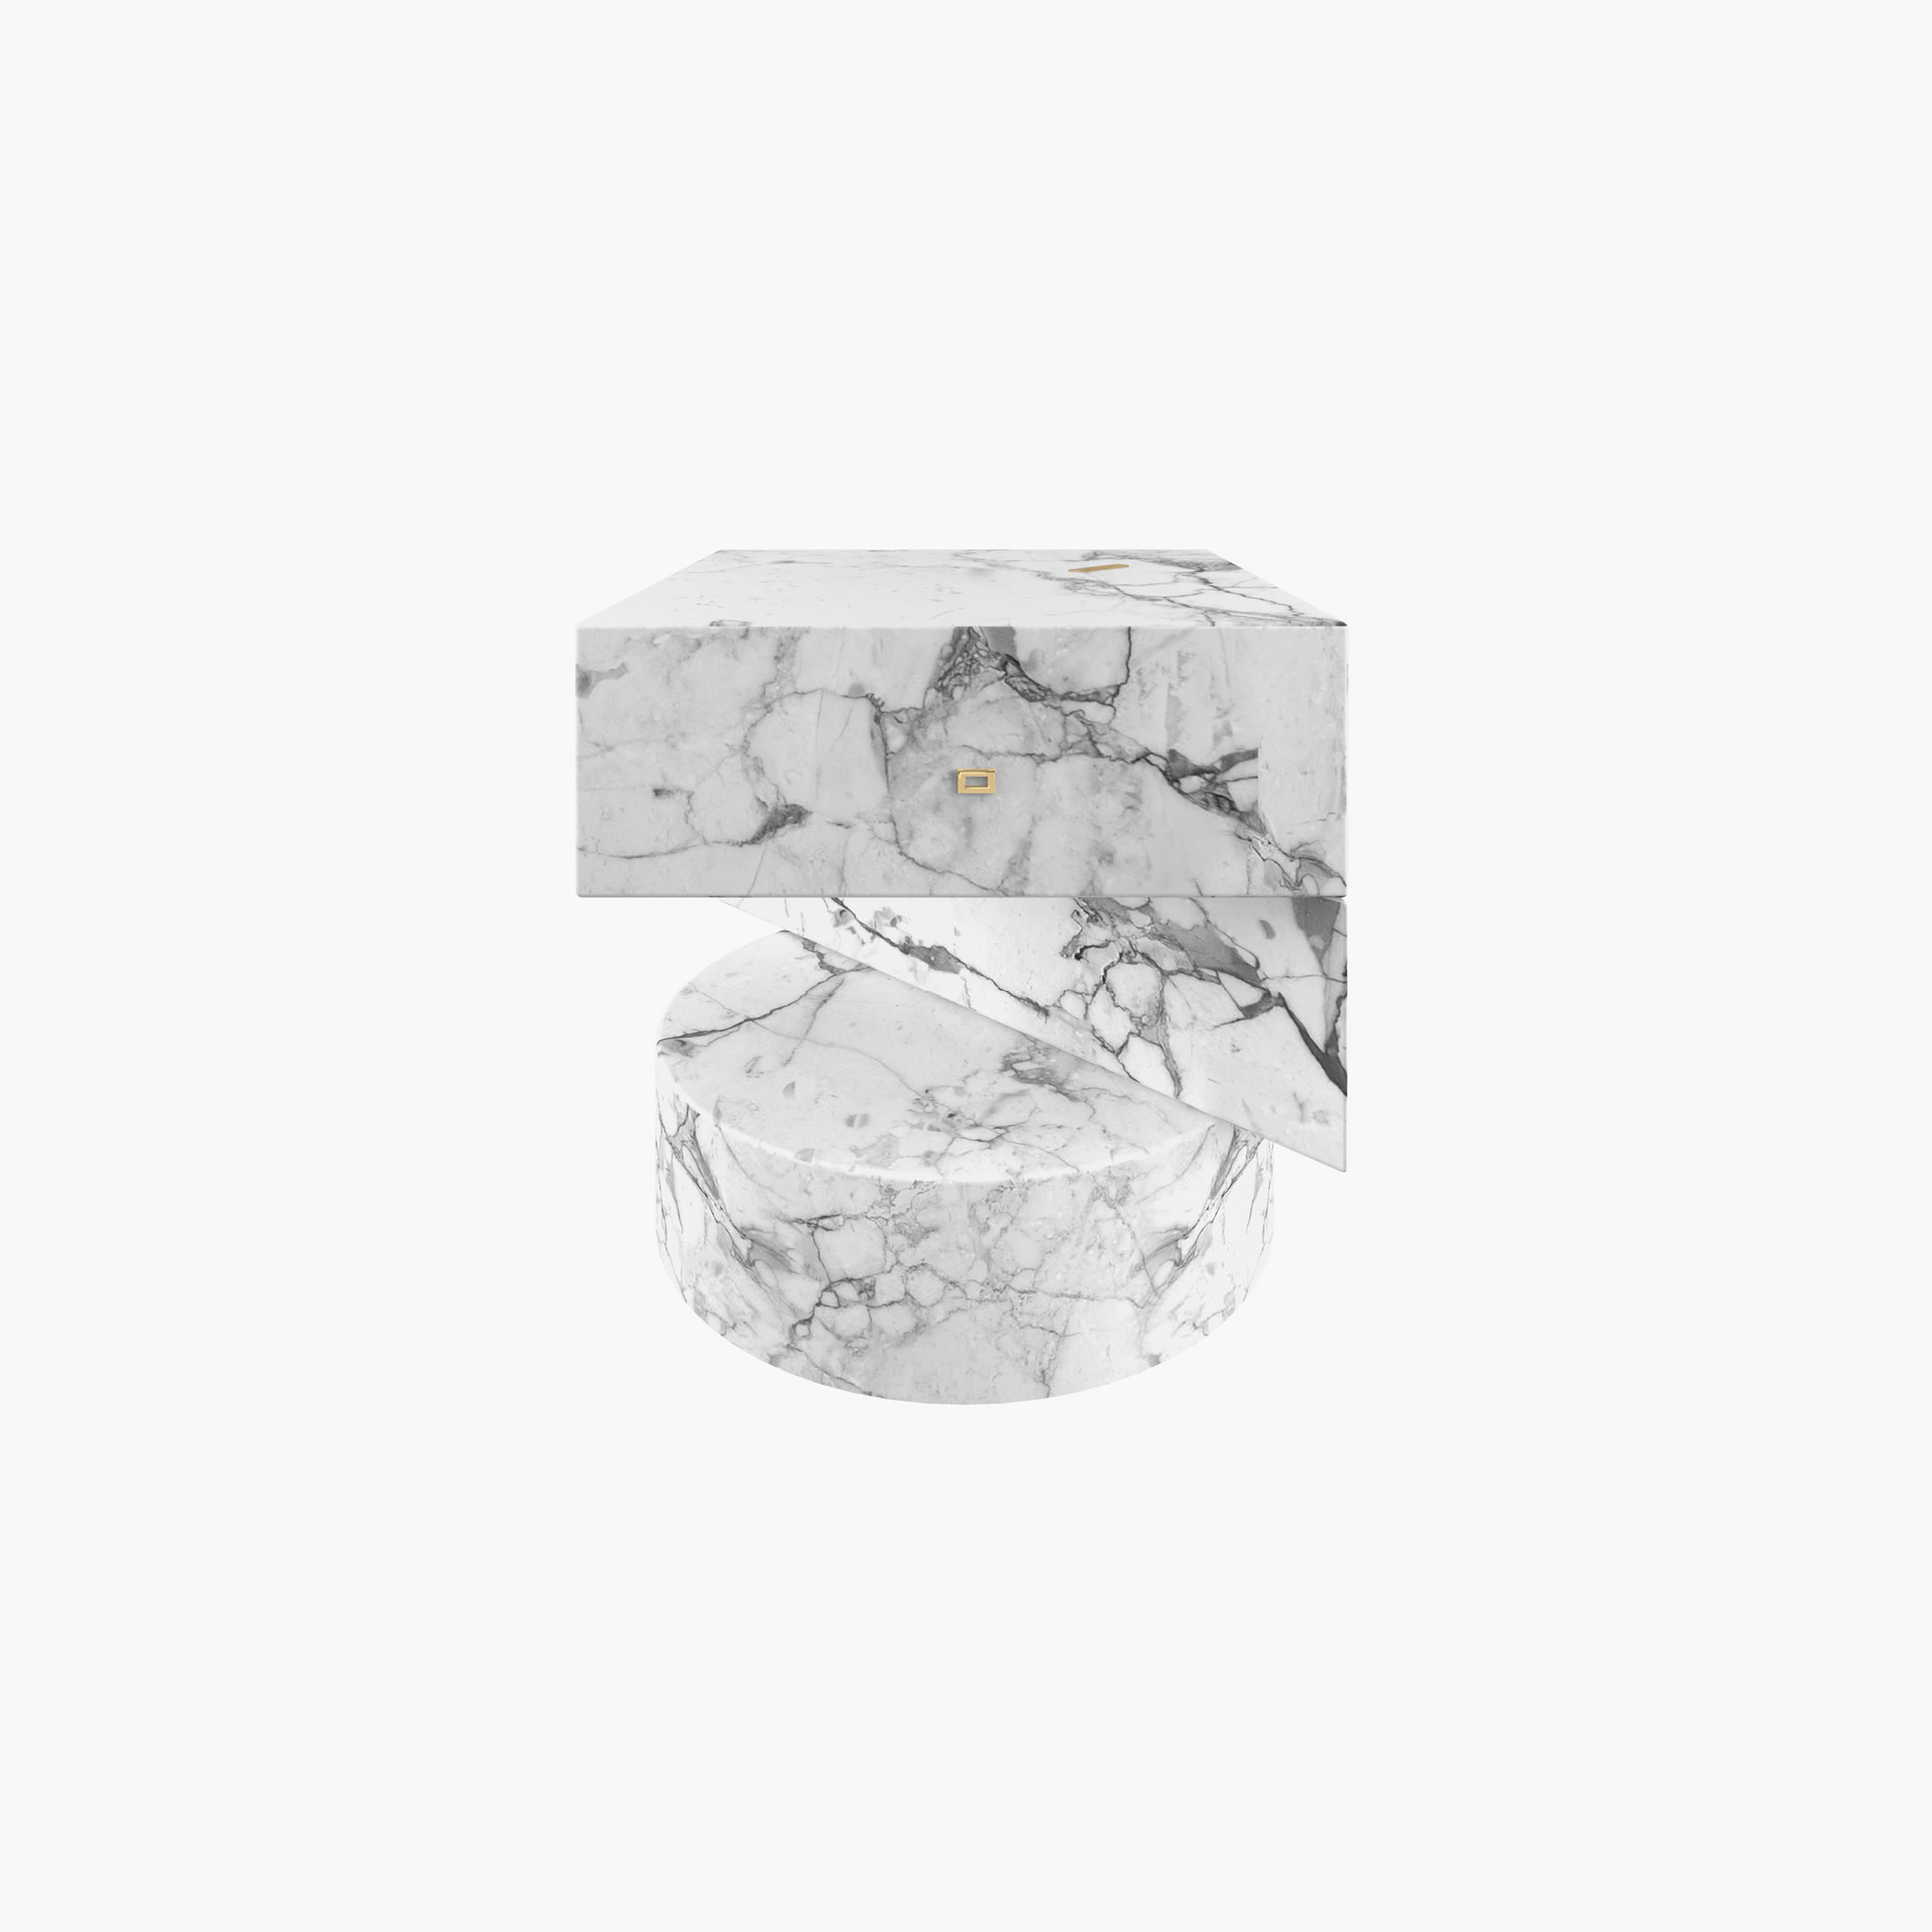 Beistelltisch Zylinder Quader Prisma Weiss Arabescato Marmor einzigartig geformt Wohnzimmer Innenarchitektur Beistelltische FS 124 FELIX SCHWAKE